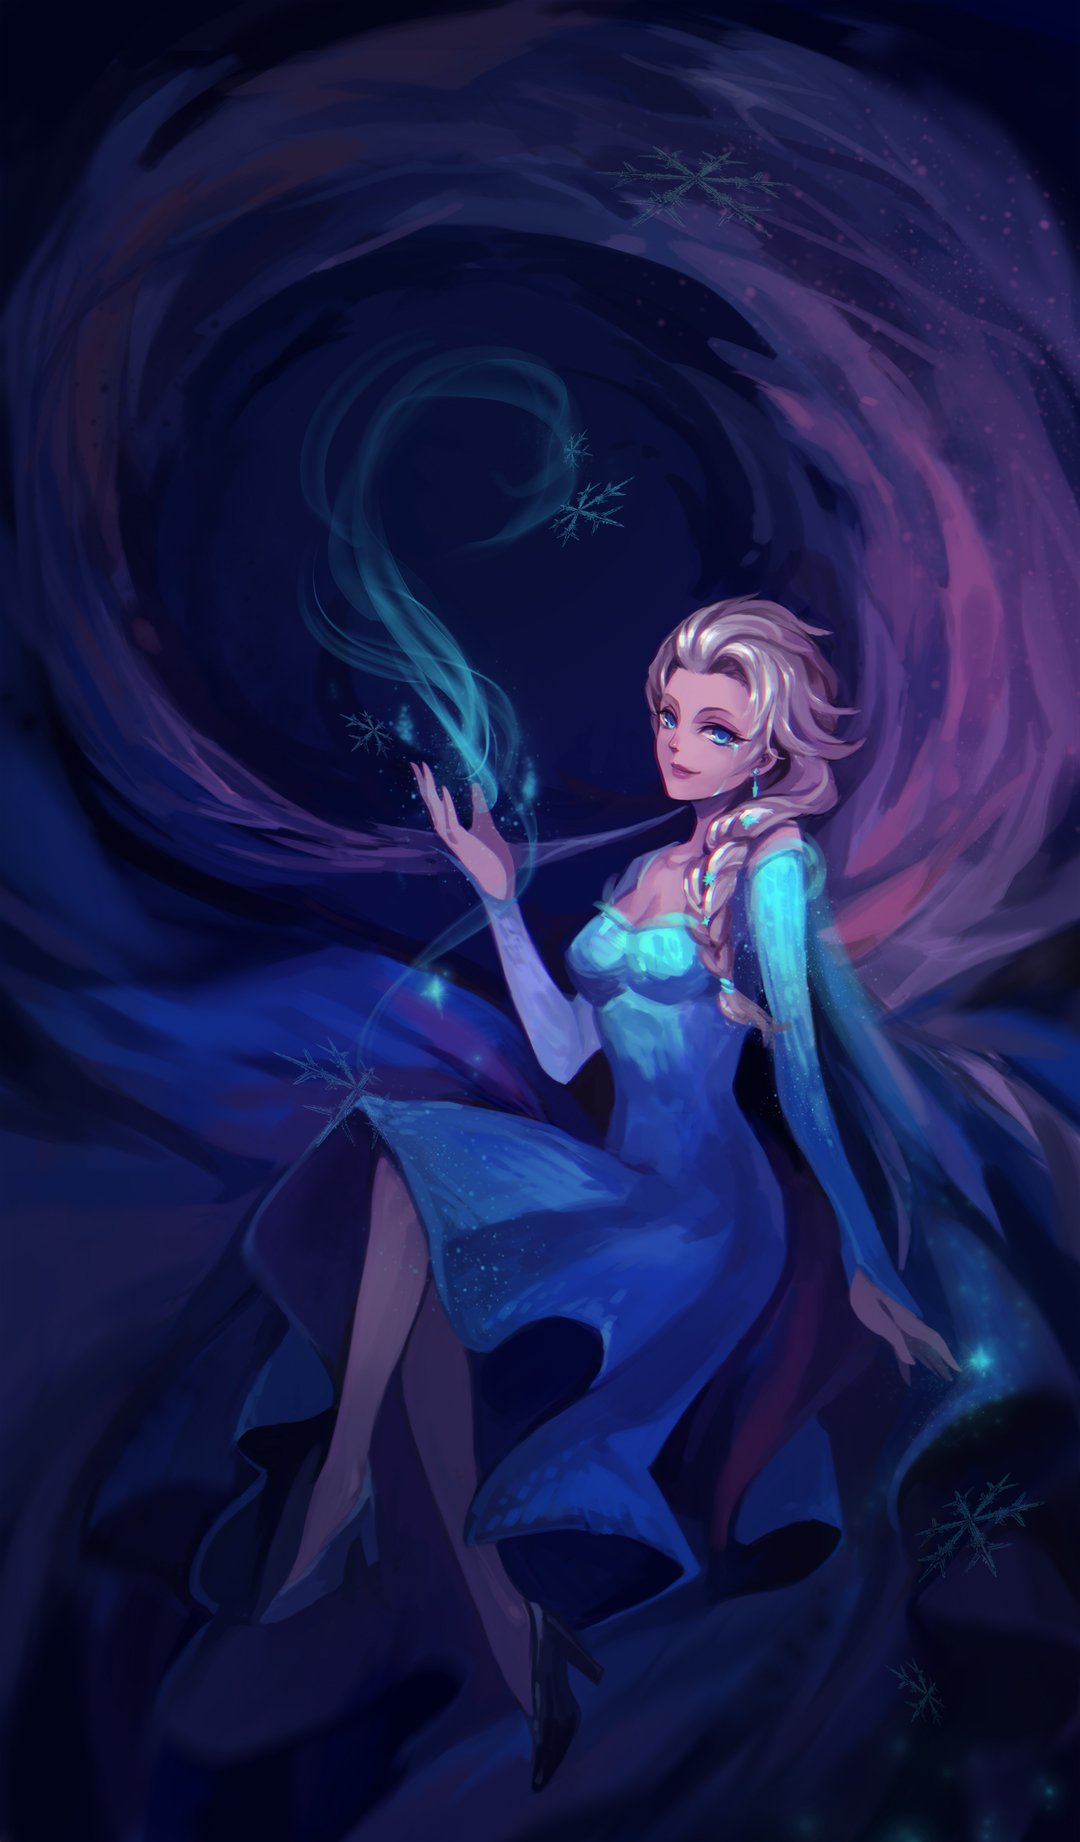 Princess Elsa, Cartoon, Frozen (movie), Fan art Wallpapers HD / Desktop